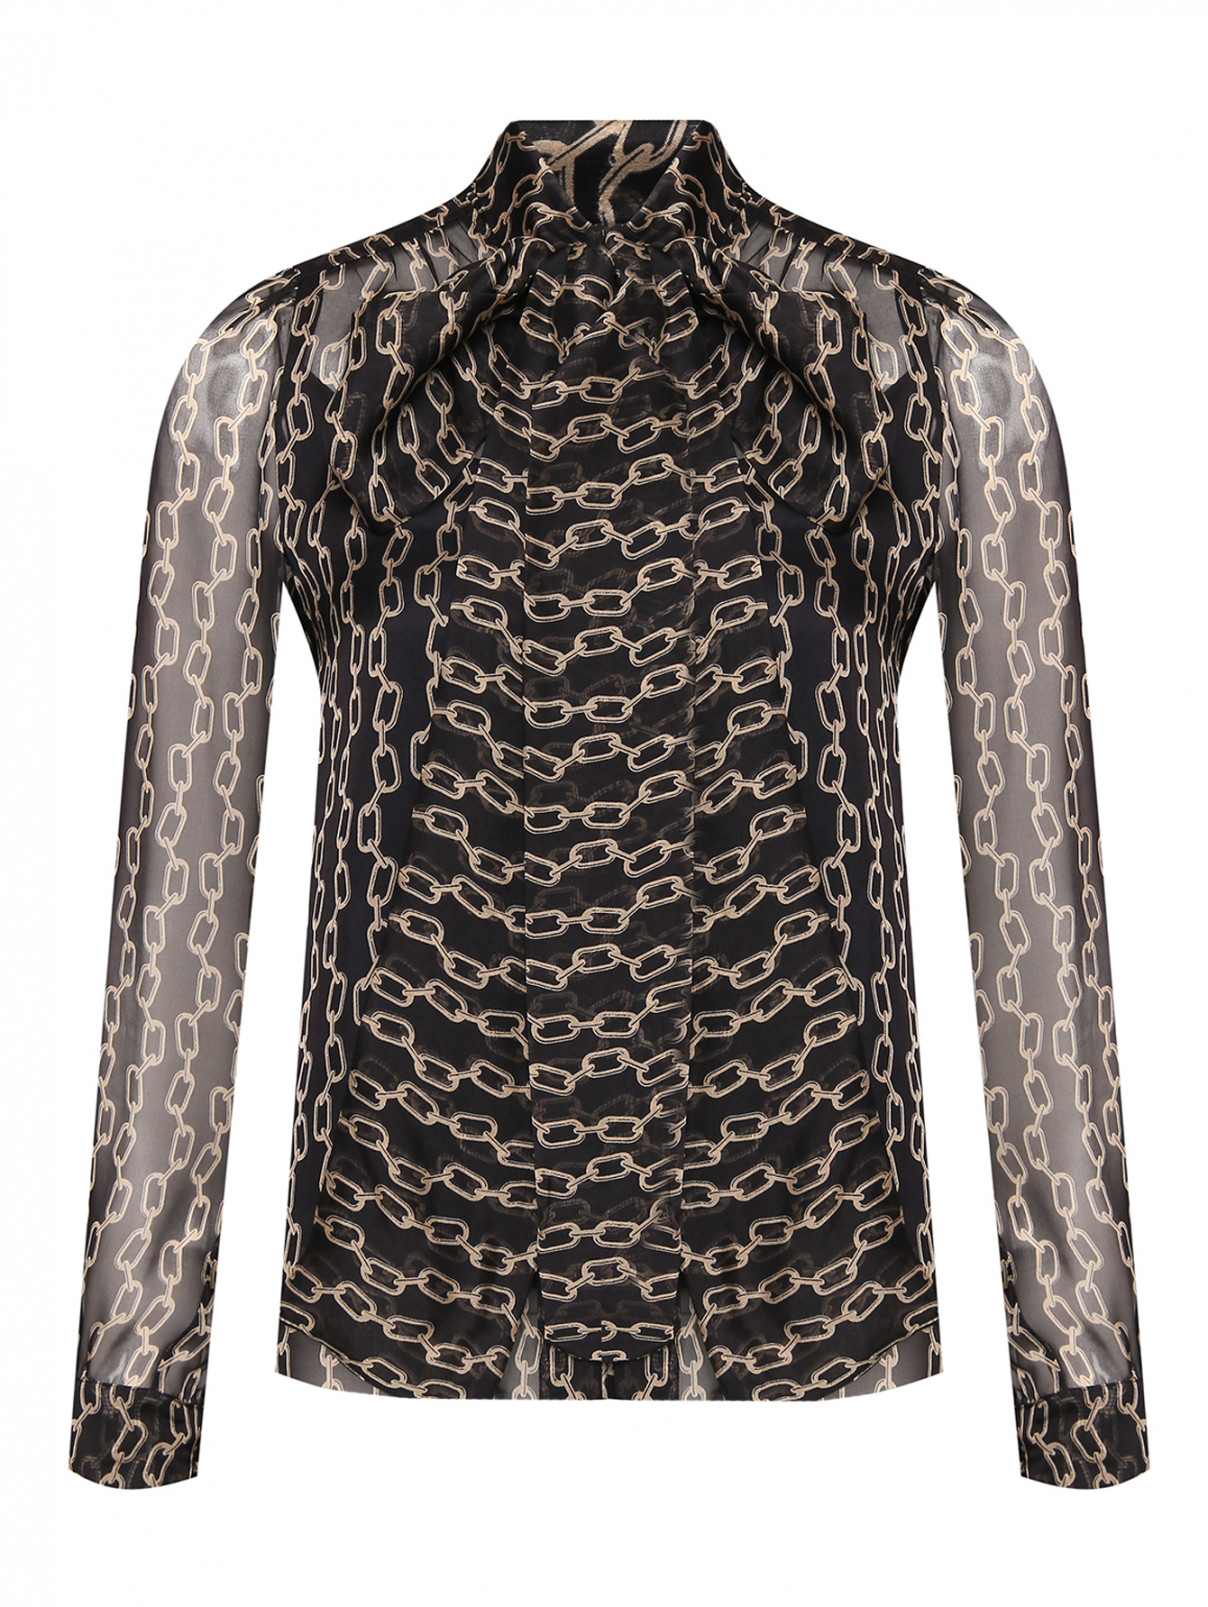 Полупрозрачная блуза из шелка с топом Max Mara  –  Общий вид  – Цвет:  Черный